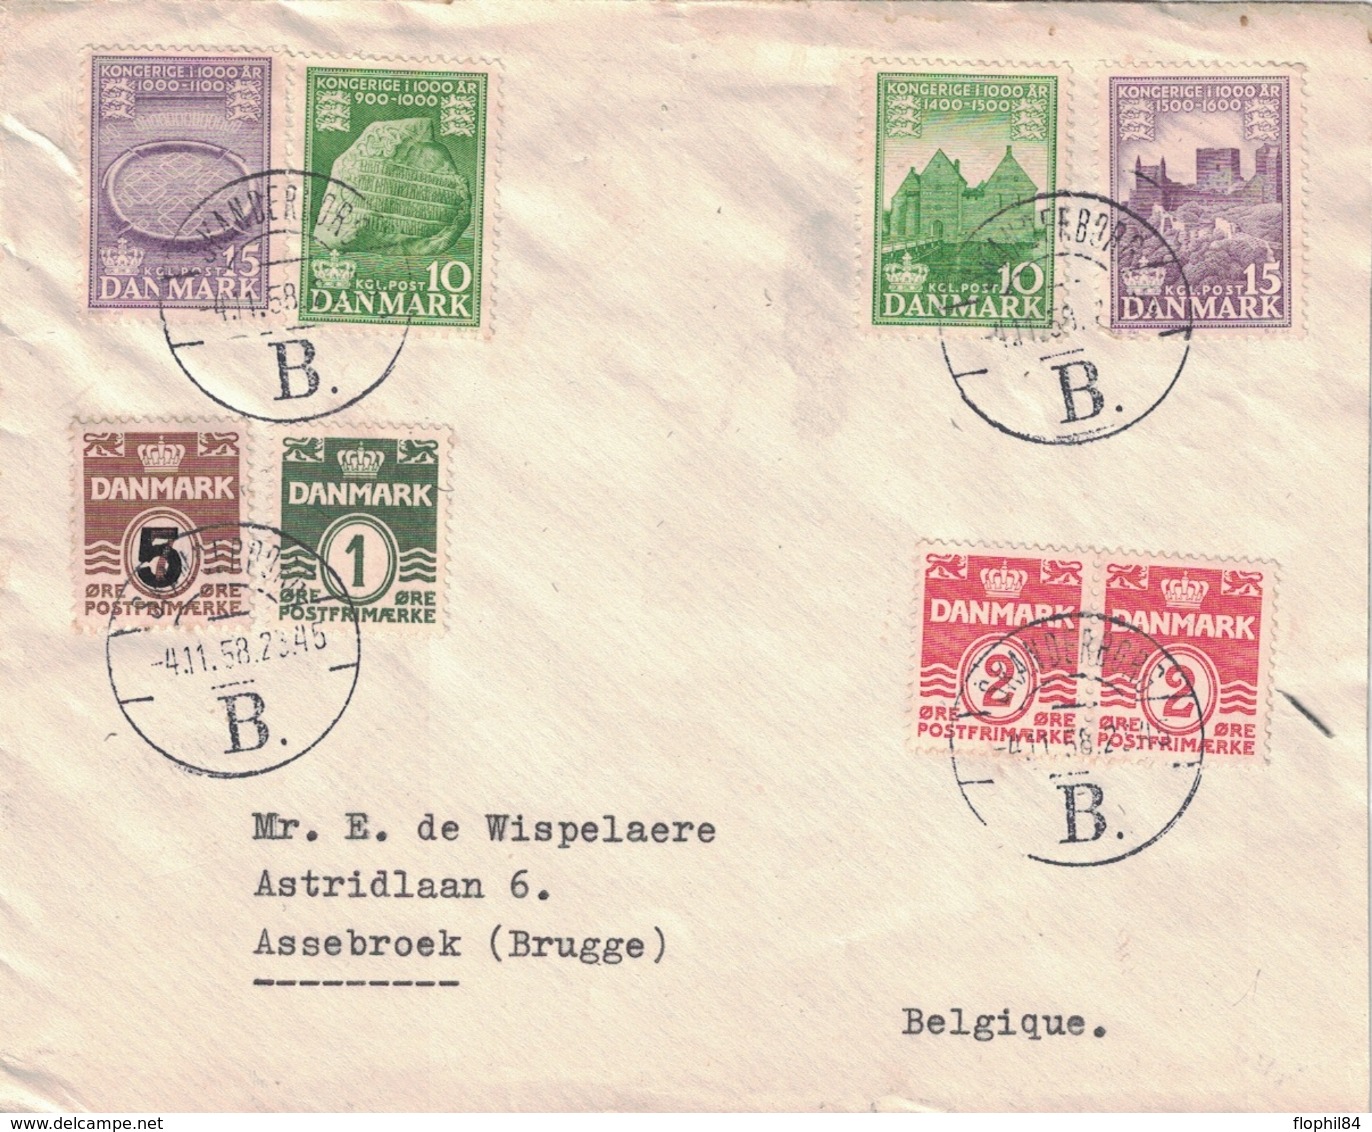 DANEMARK - SKANDERBORG - LE 4 NOVEMBRE 1958 - SUPERBE AFFRANCHISSEMENT POUR LA BELGIQUE. - Covers & Documents